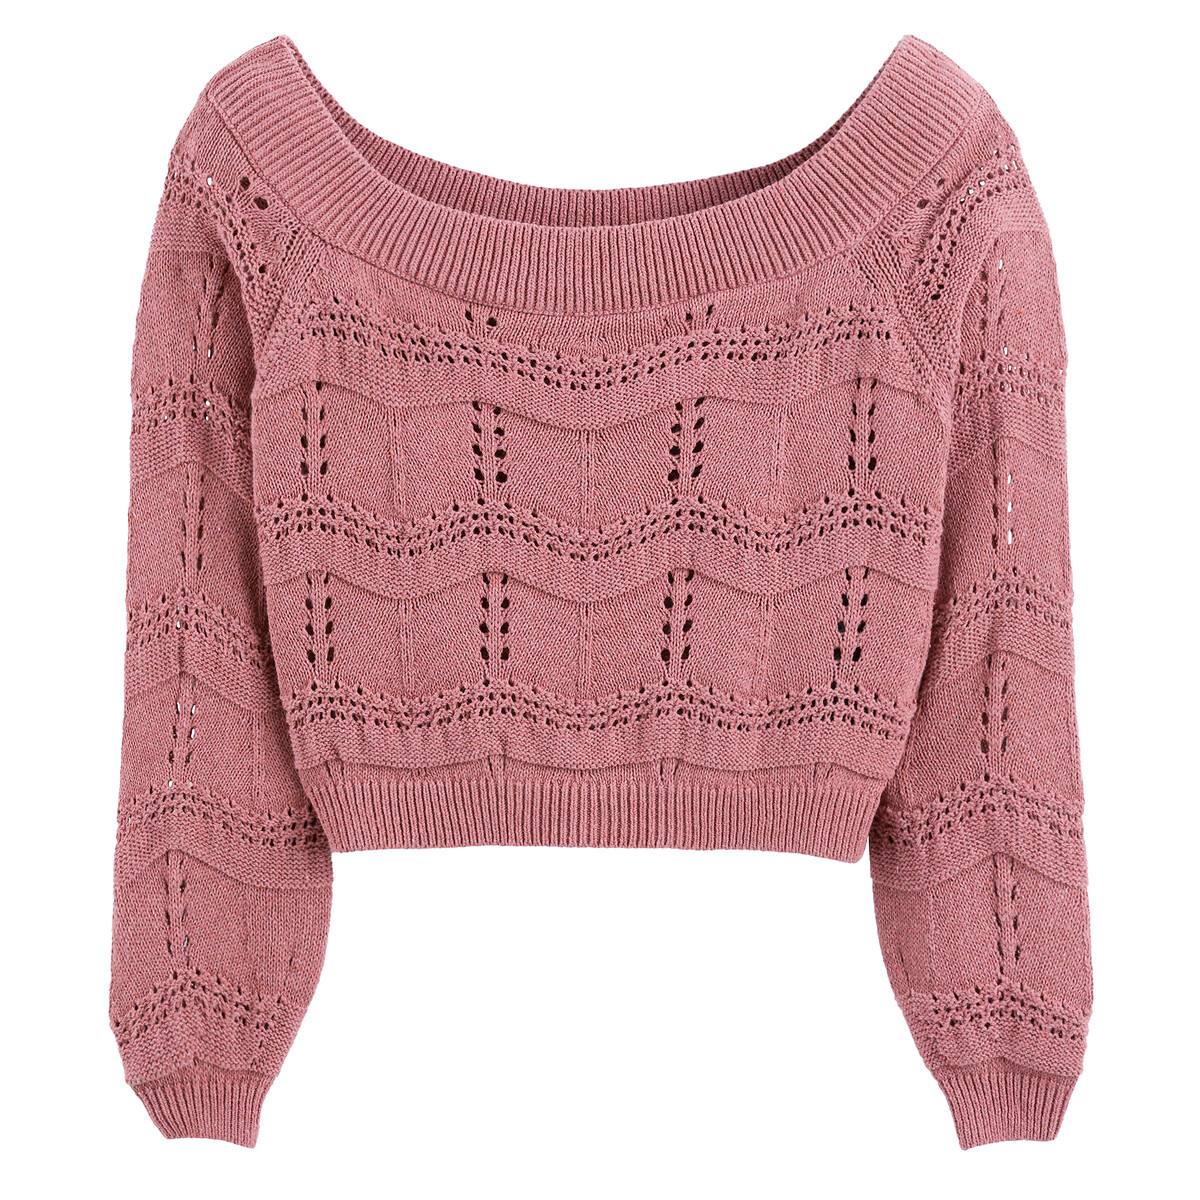 Пуловер Из тонкого трикотажа вырез-лодочка XS розовый LaRedoute, размер XS - фото 1